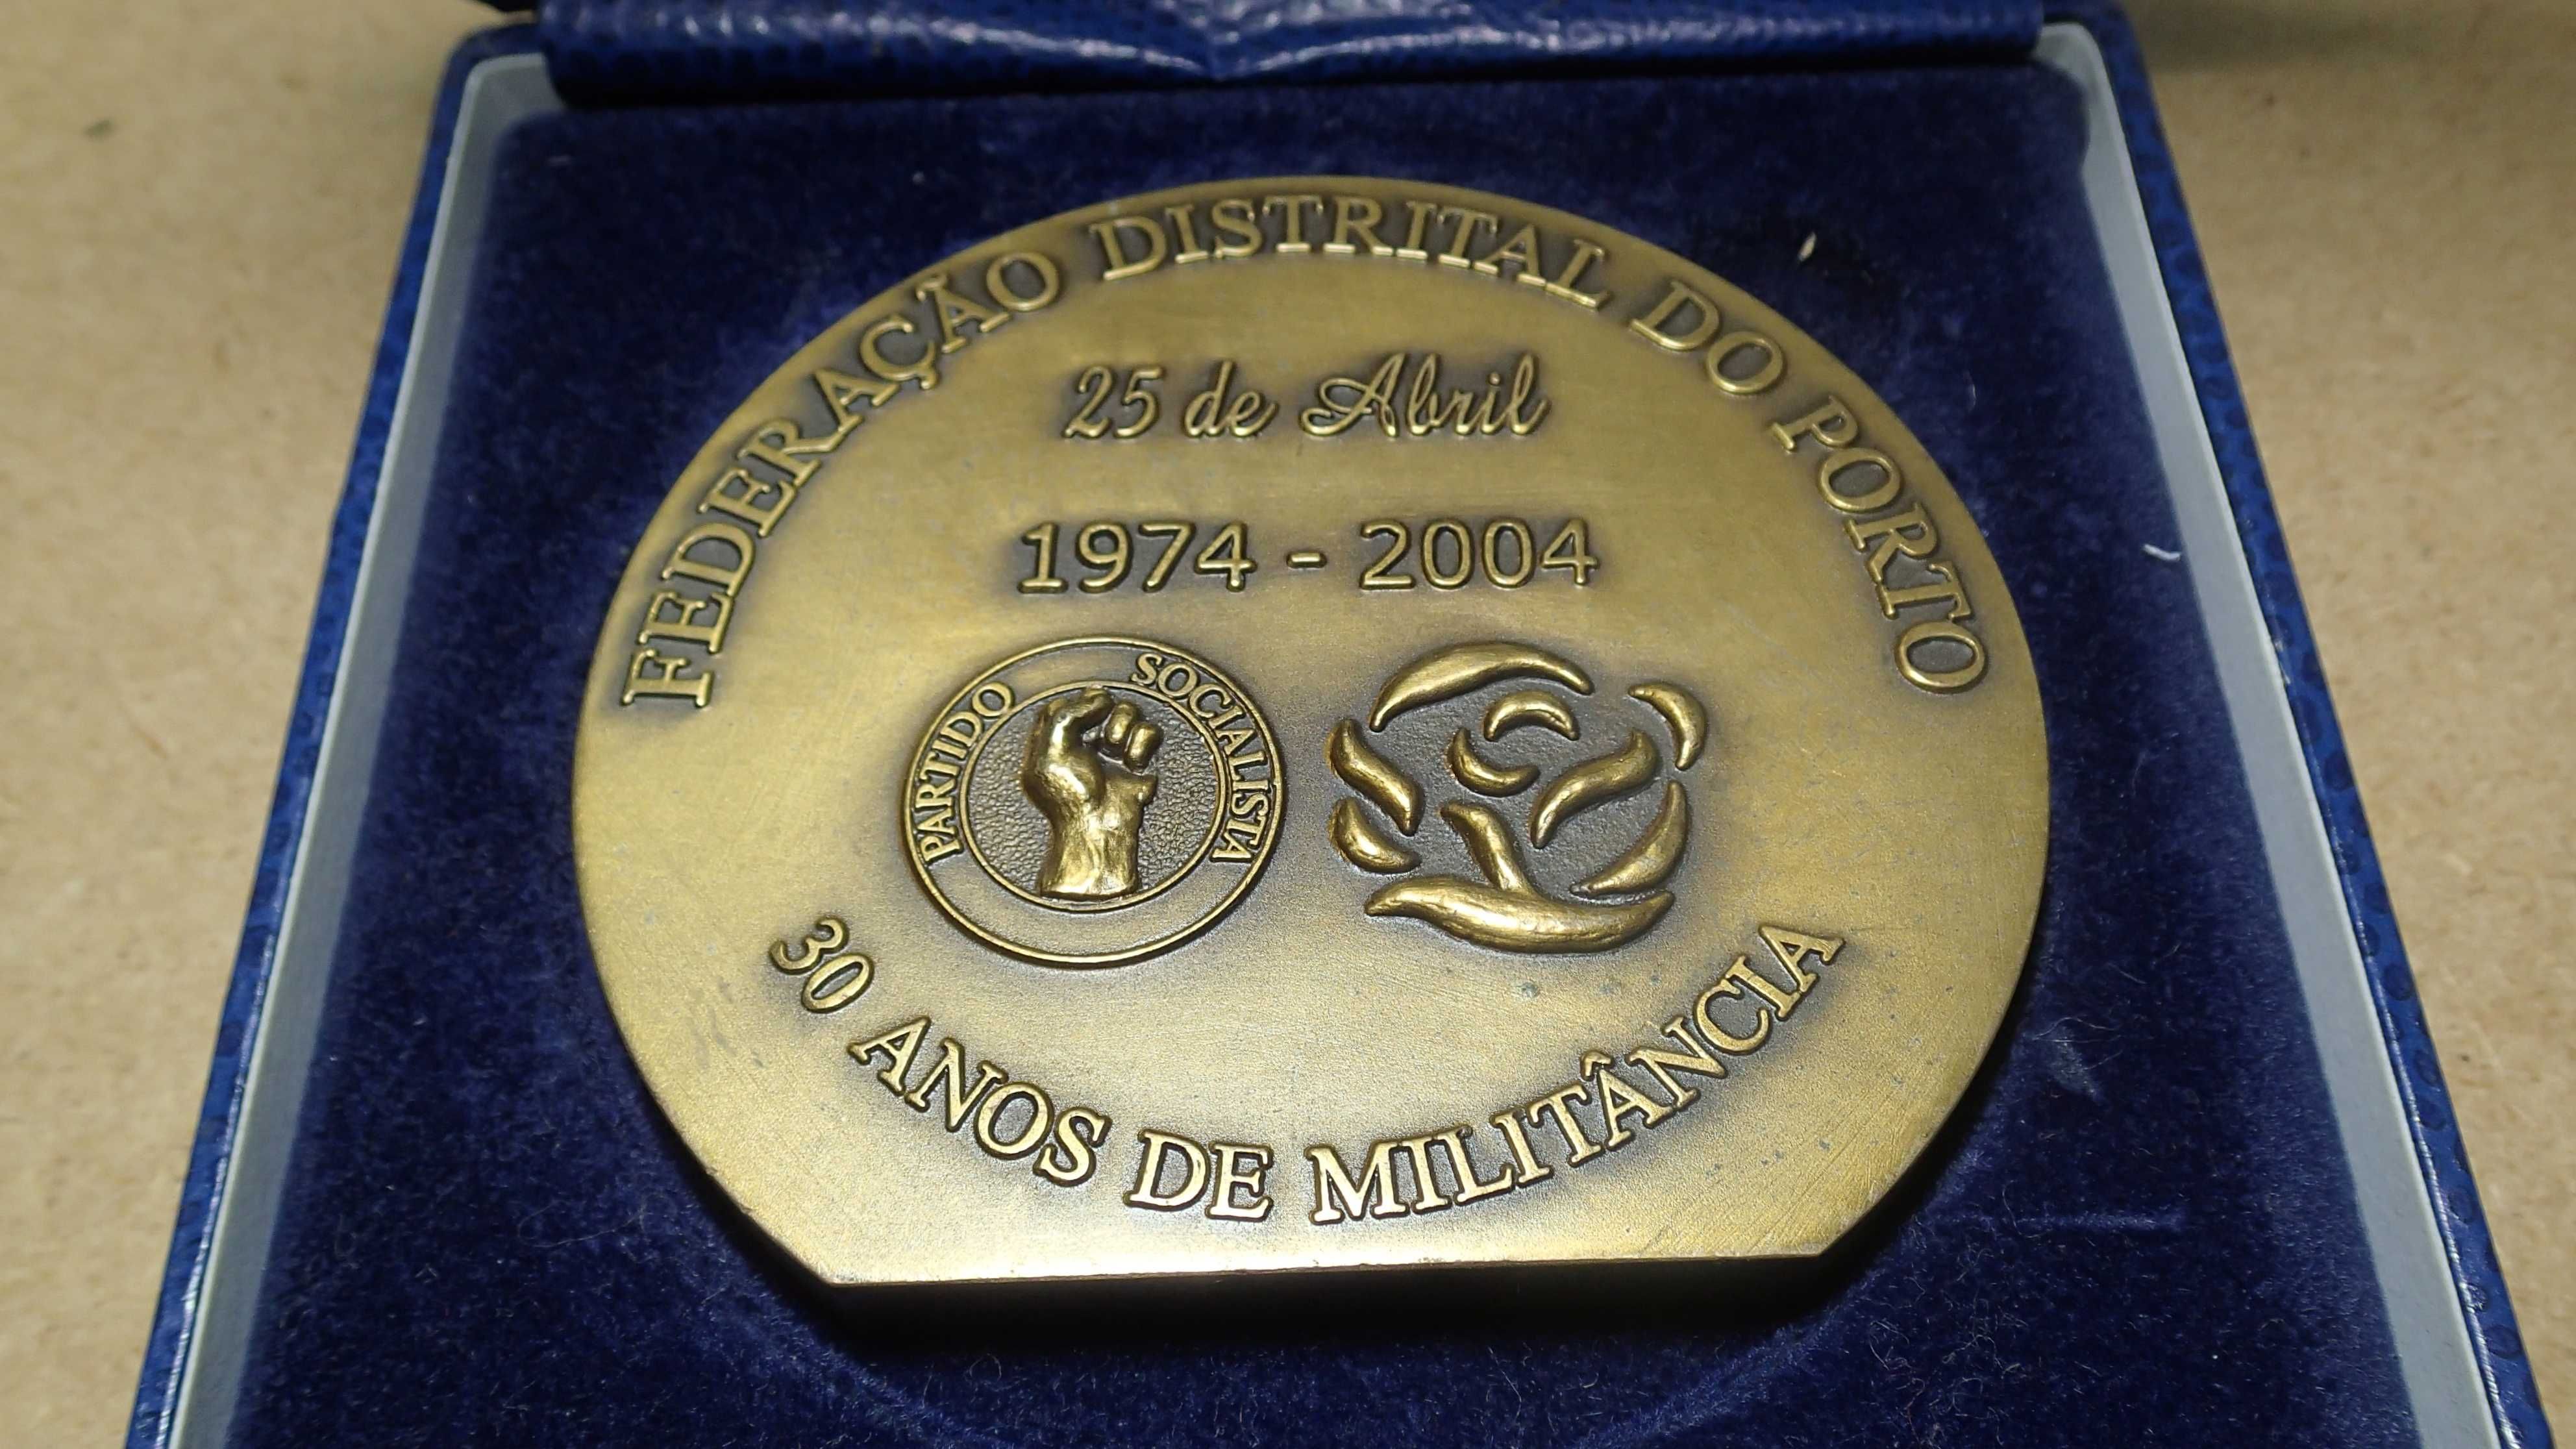 Medalha em Bronze do 25 de Abril do Partido Socialista